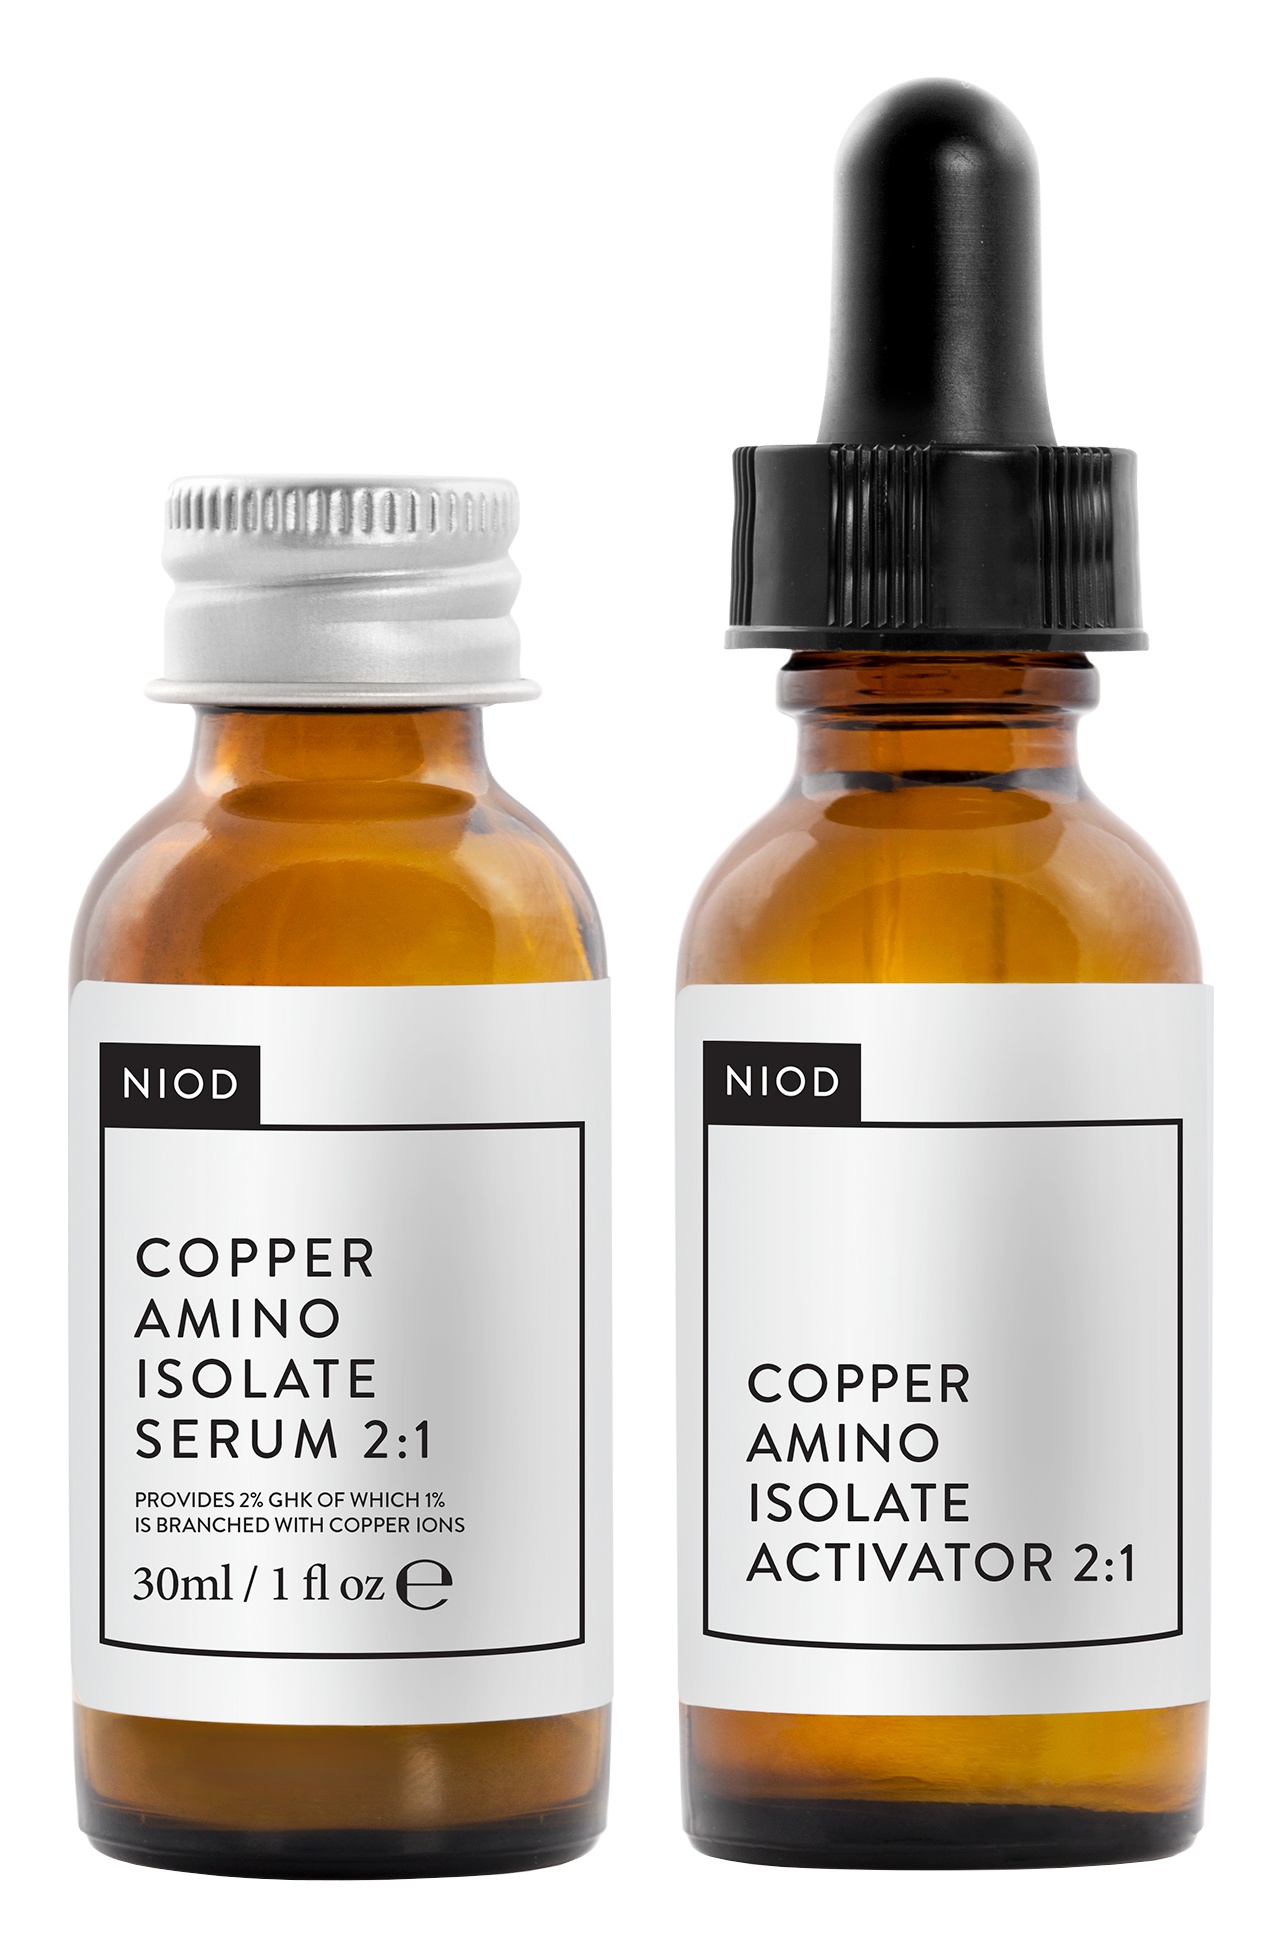 NIOD Copper Amino Isolate Serum 2:1